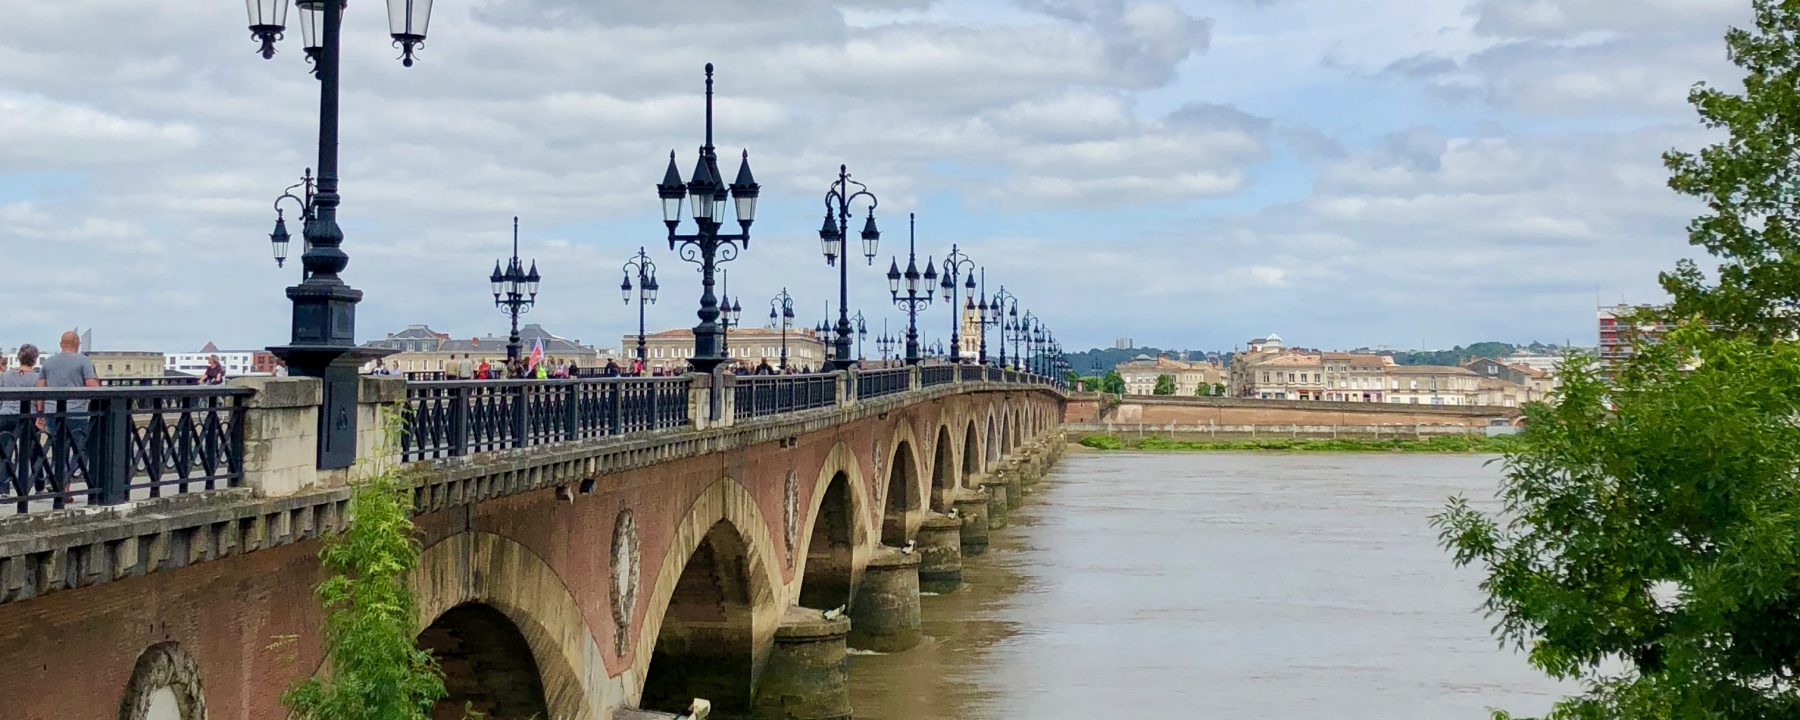 VIeux pont de Bordeaux au-dessus de la Garonne, France